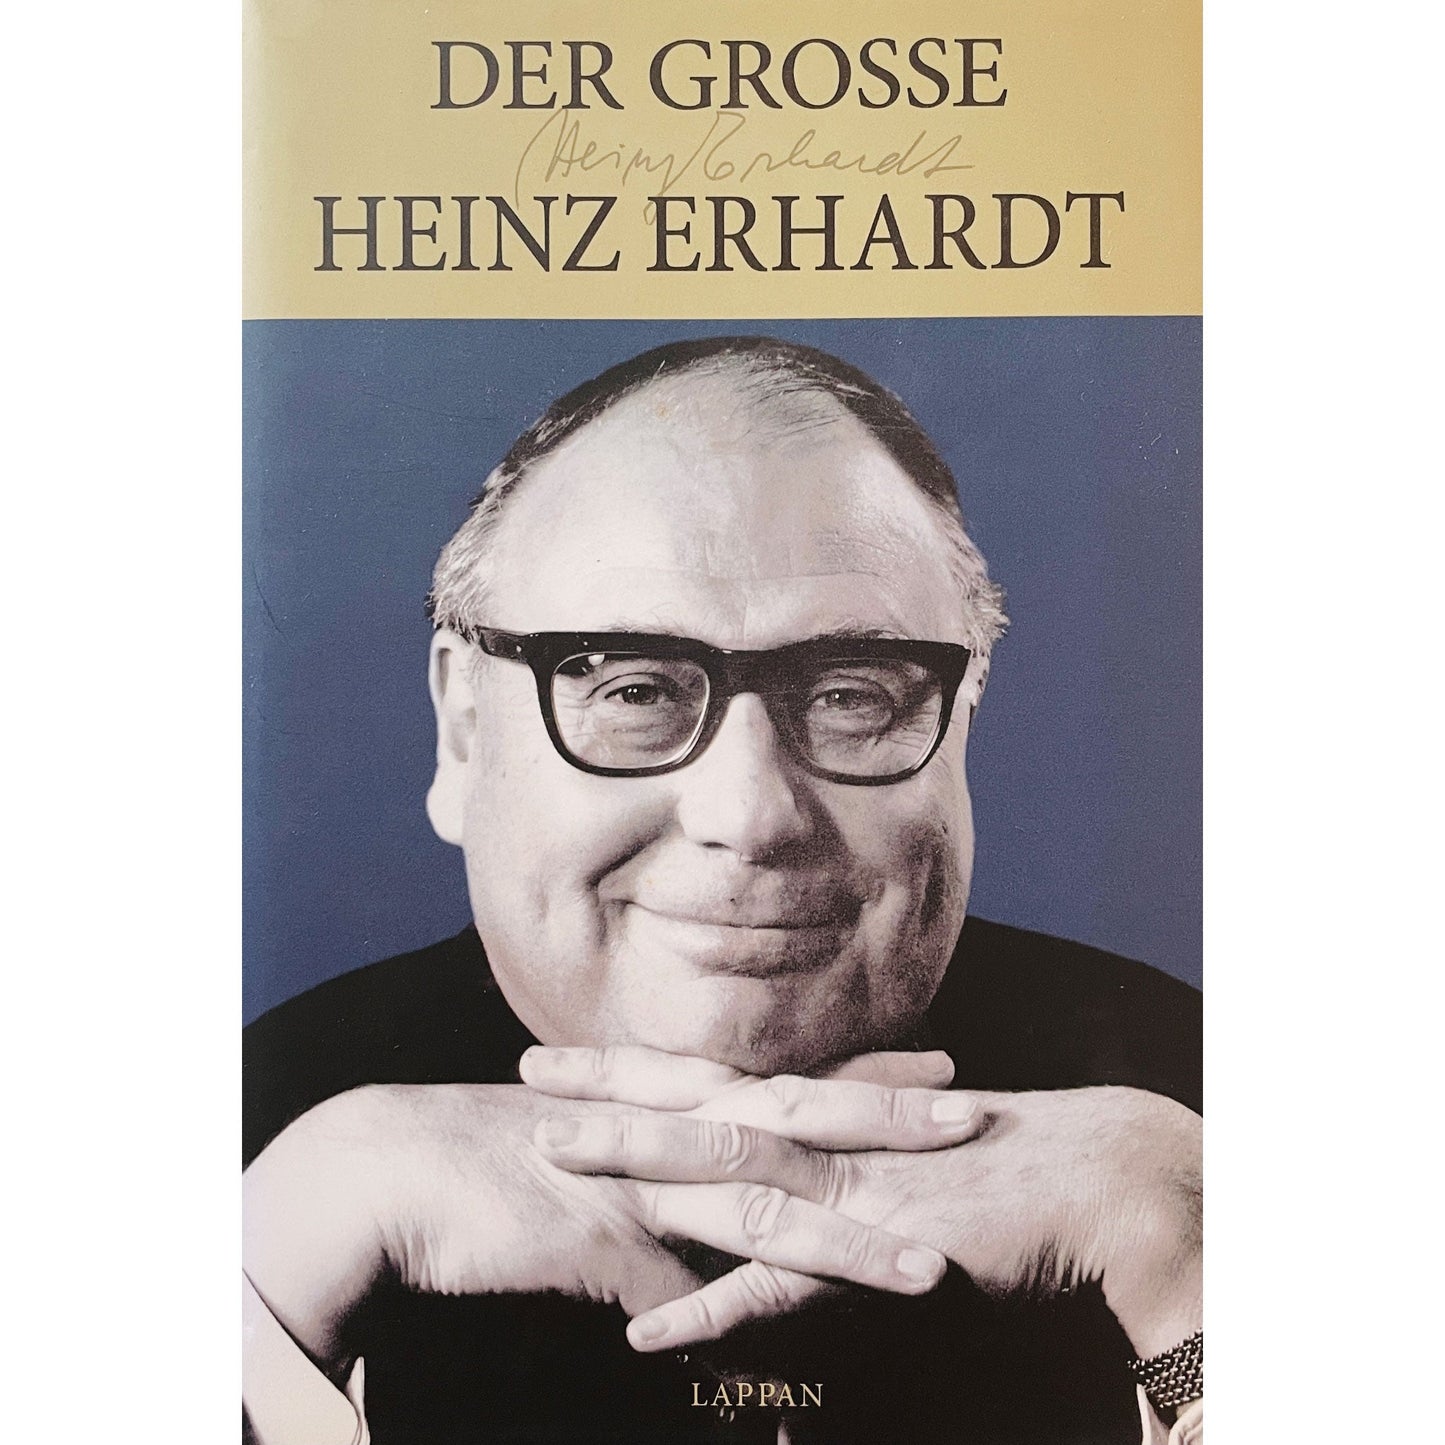 Der grosse Heinz Erhardt